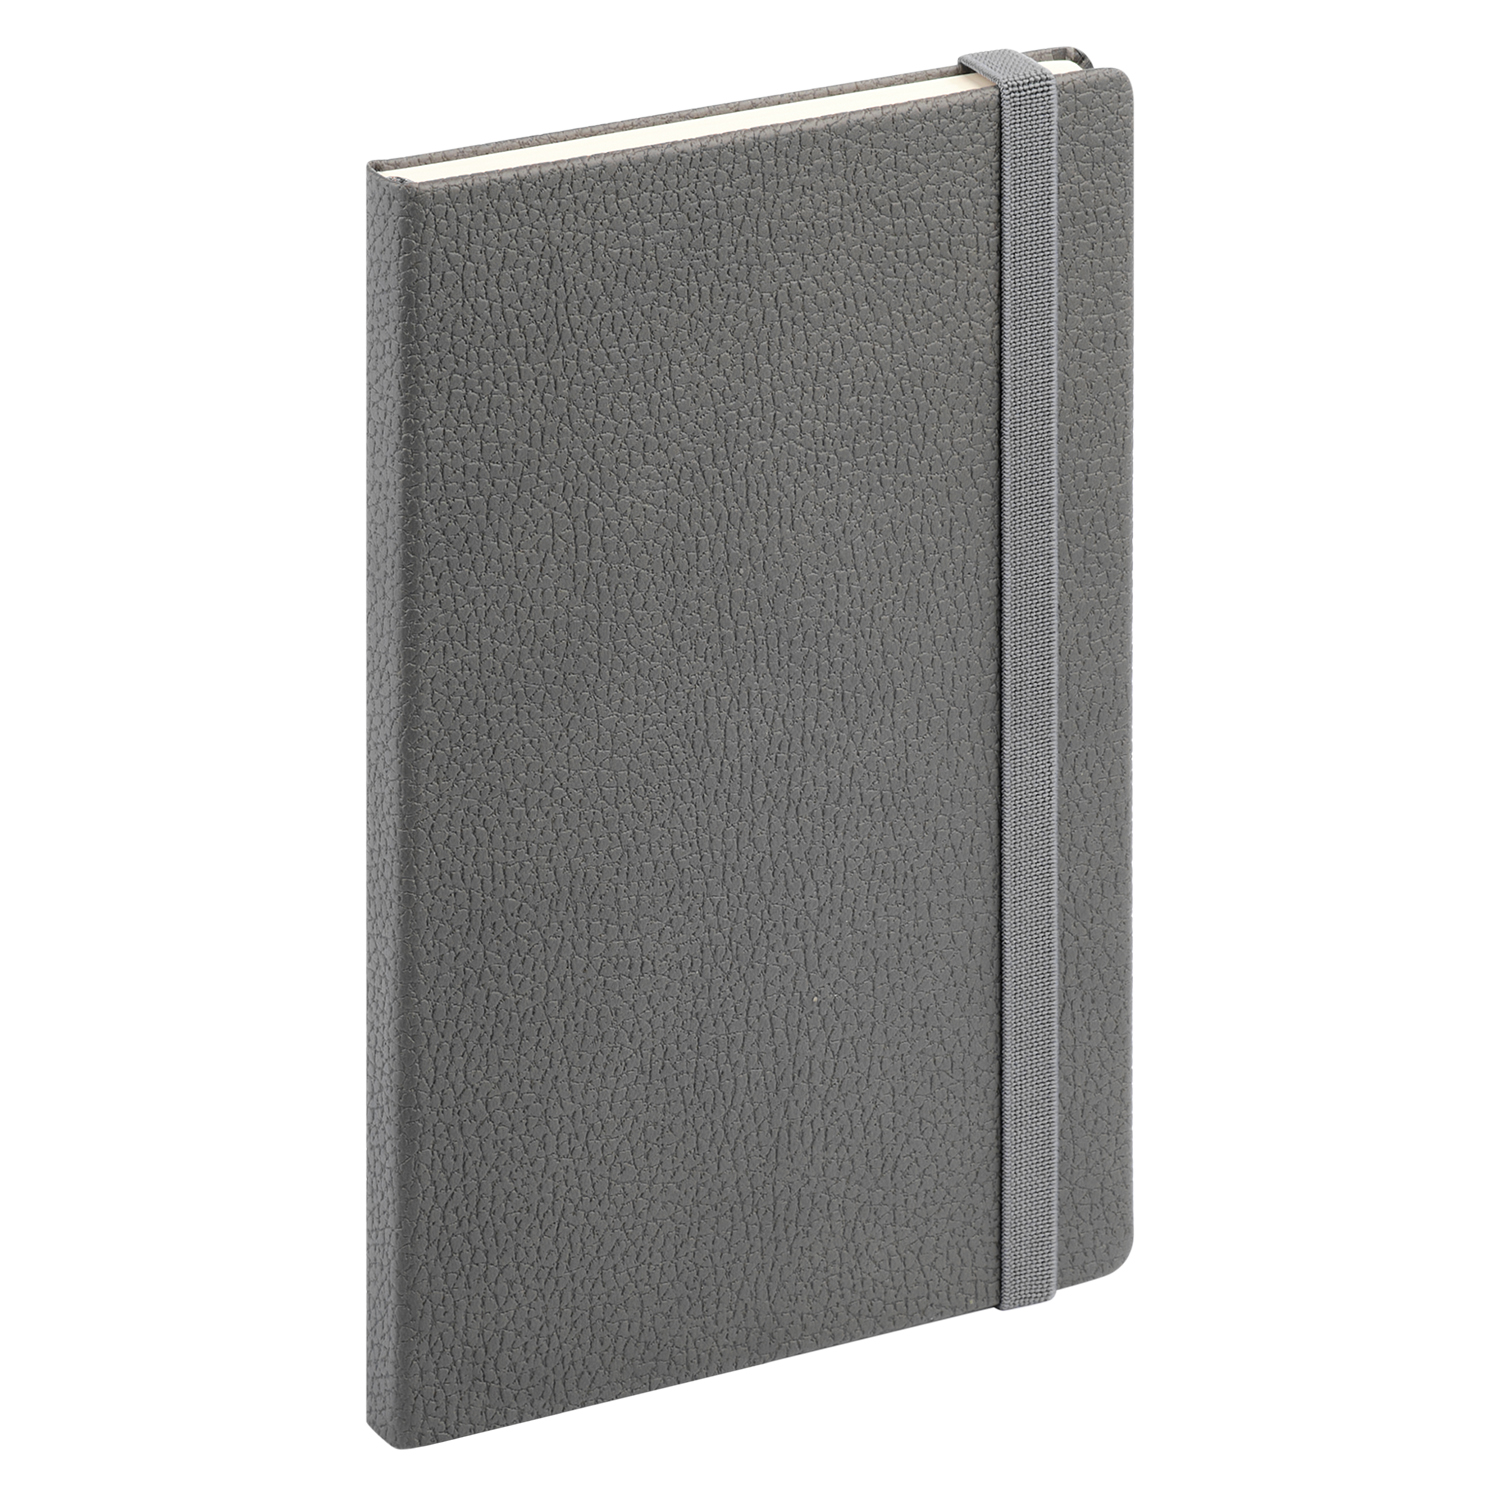 Ежедневник Dallas Btobook недатированный, серый (без упаковки, без стикера)